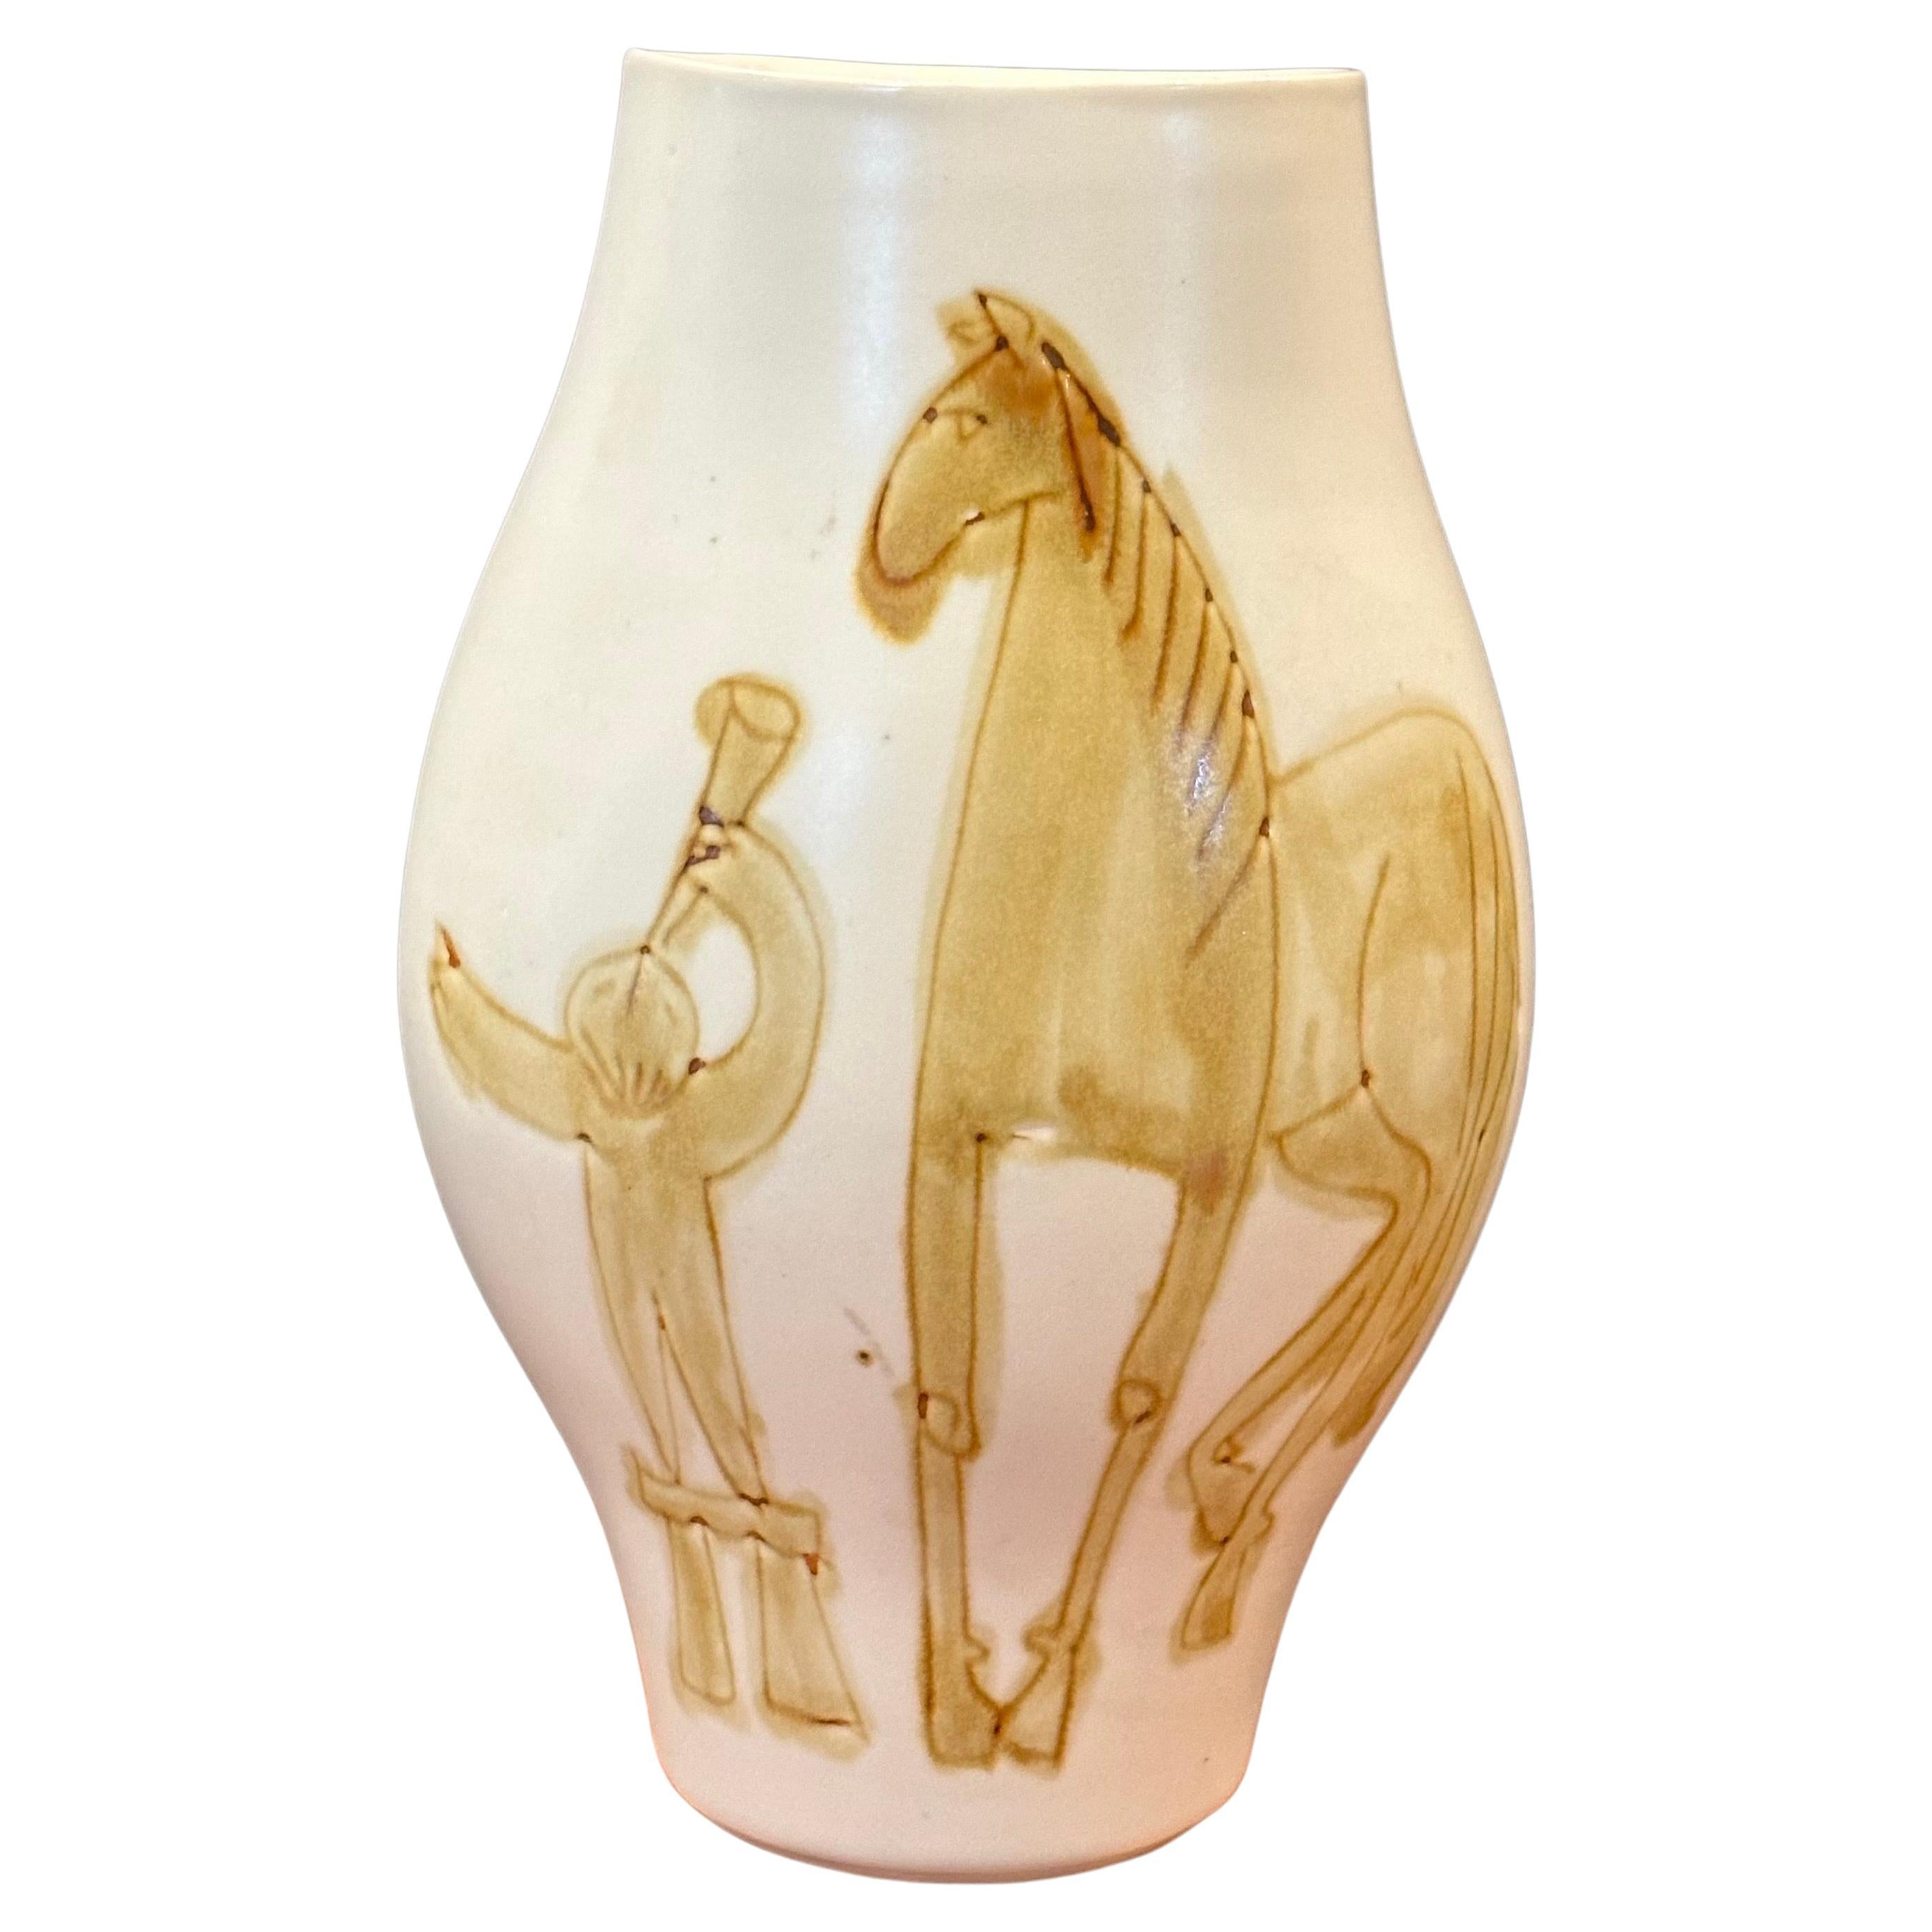 Keramikvase mit handbemaltem Pferd im Stil von Picasso, Vintage